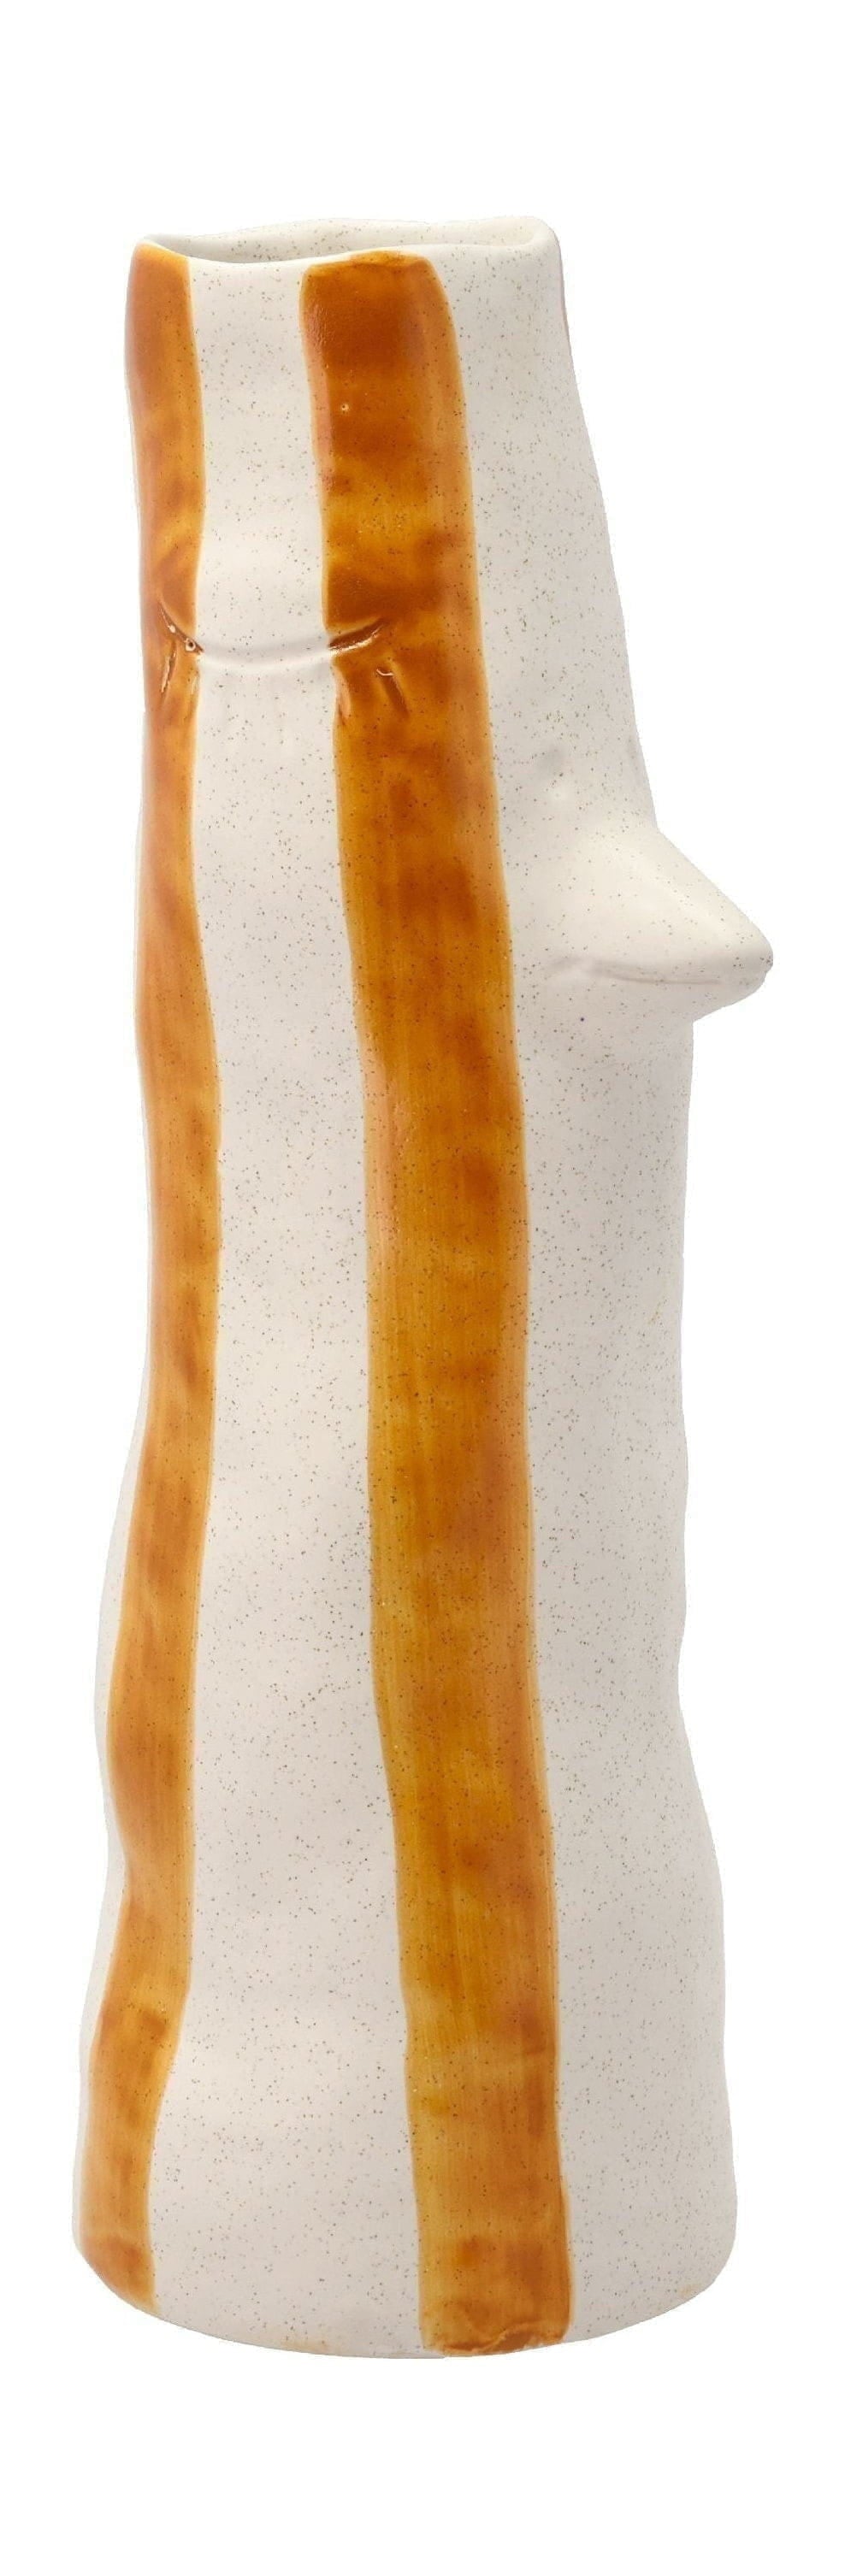 Villa -Kollektionsstil Vase mit Schnabel und Wimpern groß, braun